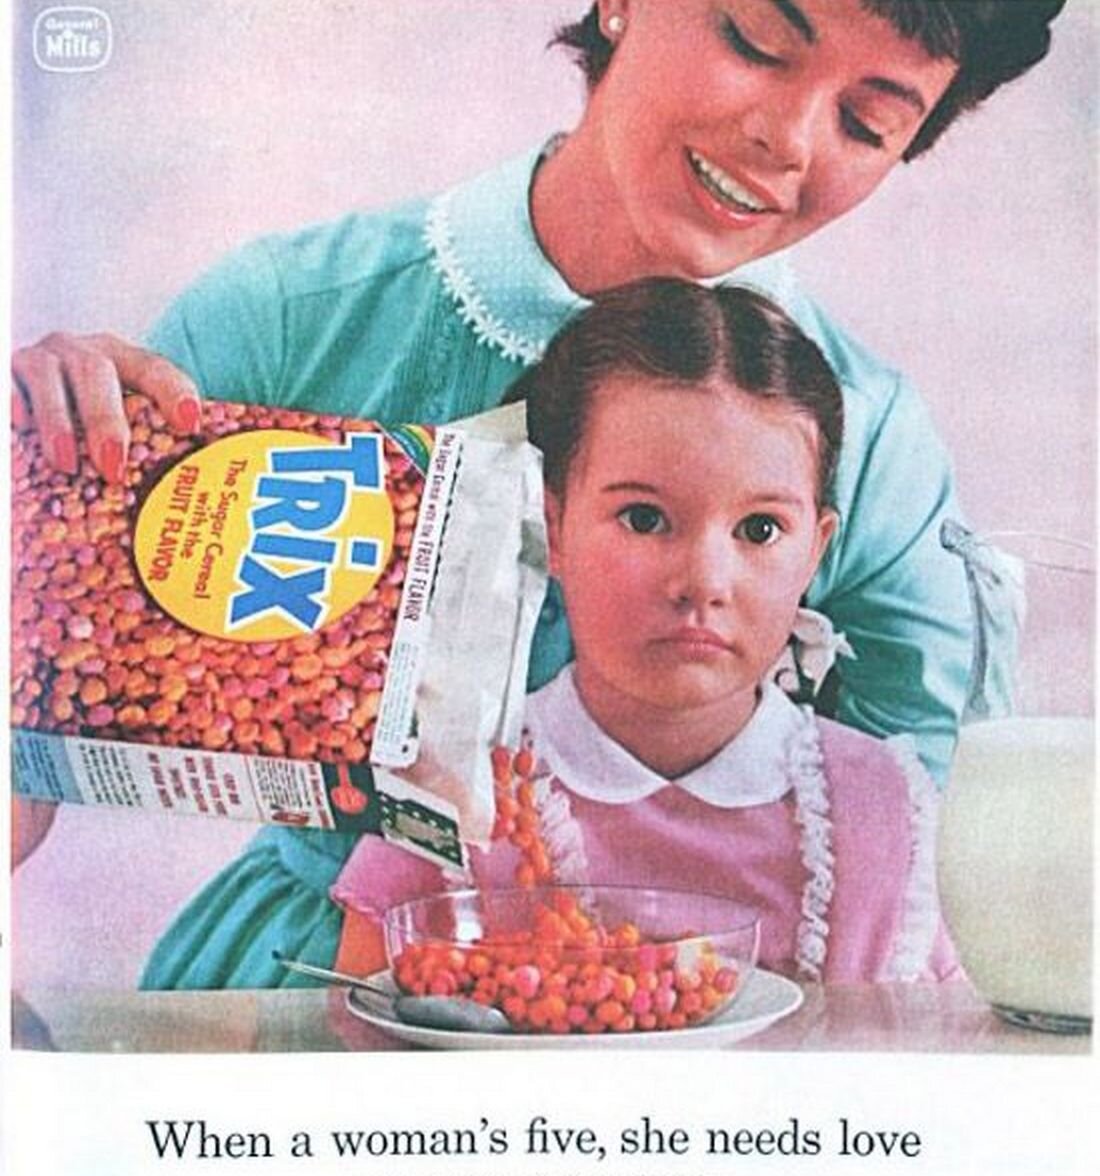 "Винтажная реклама с пугающими детьми: почему в 50-х годах она казалась людям нормальной?"